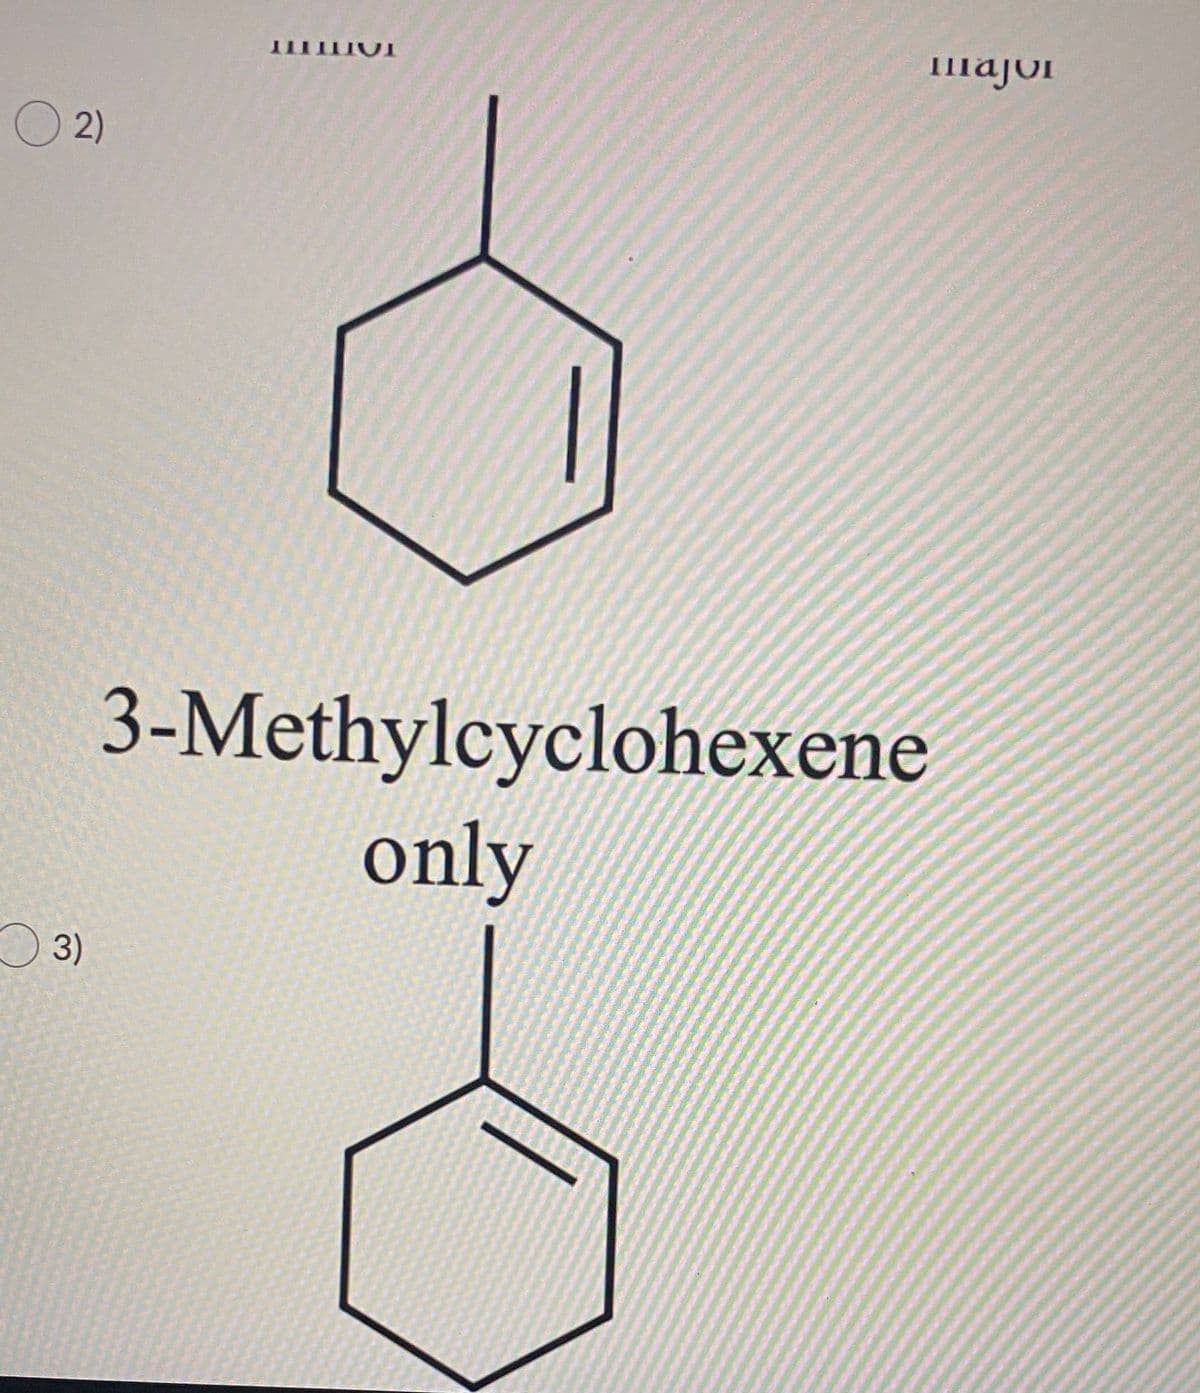 Imajor
O 2)
3-Methylcyclohexene
only
O 3)
